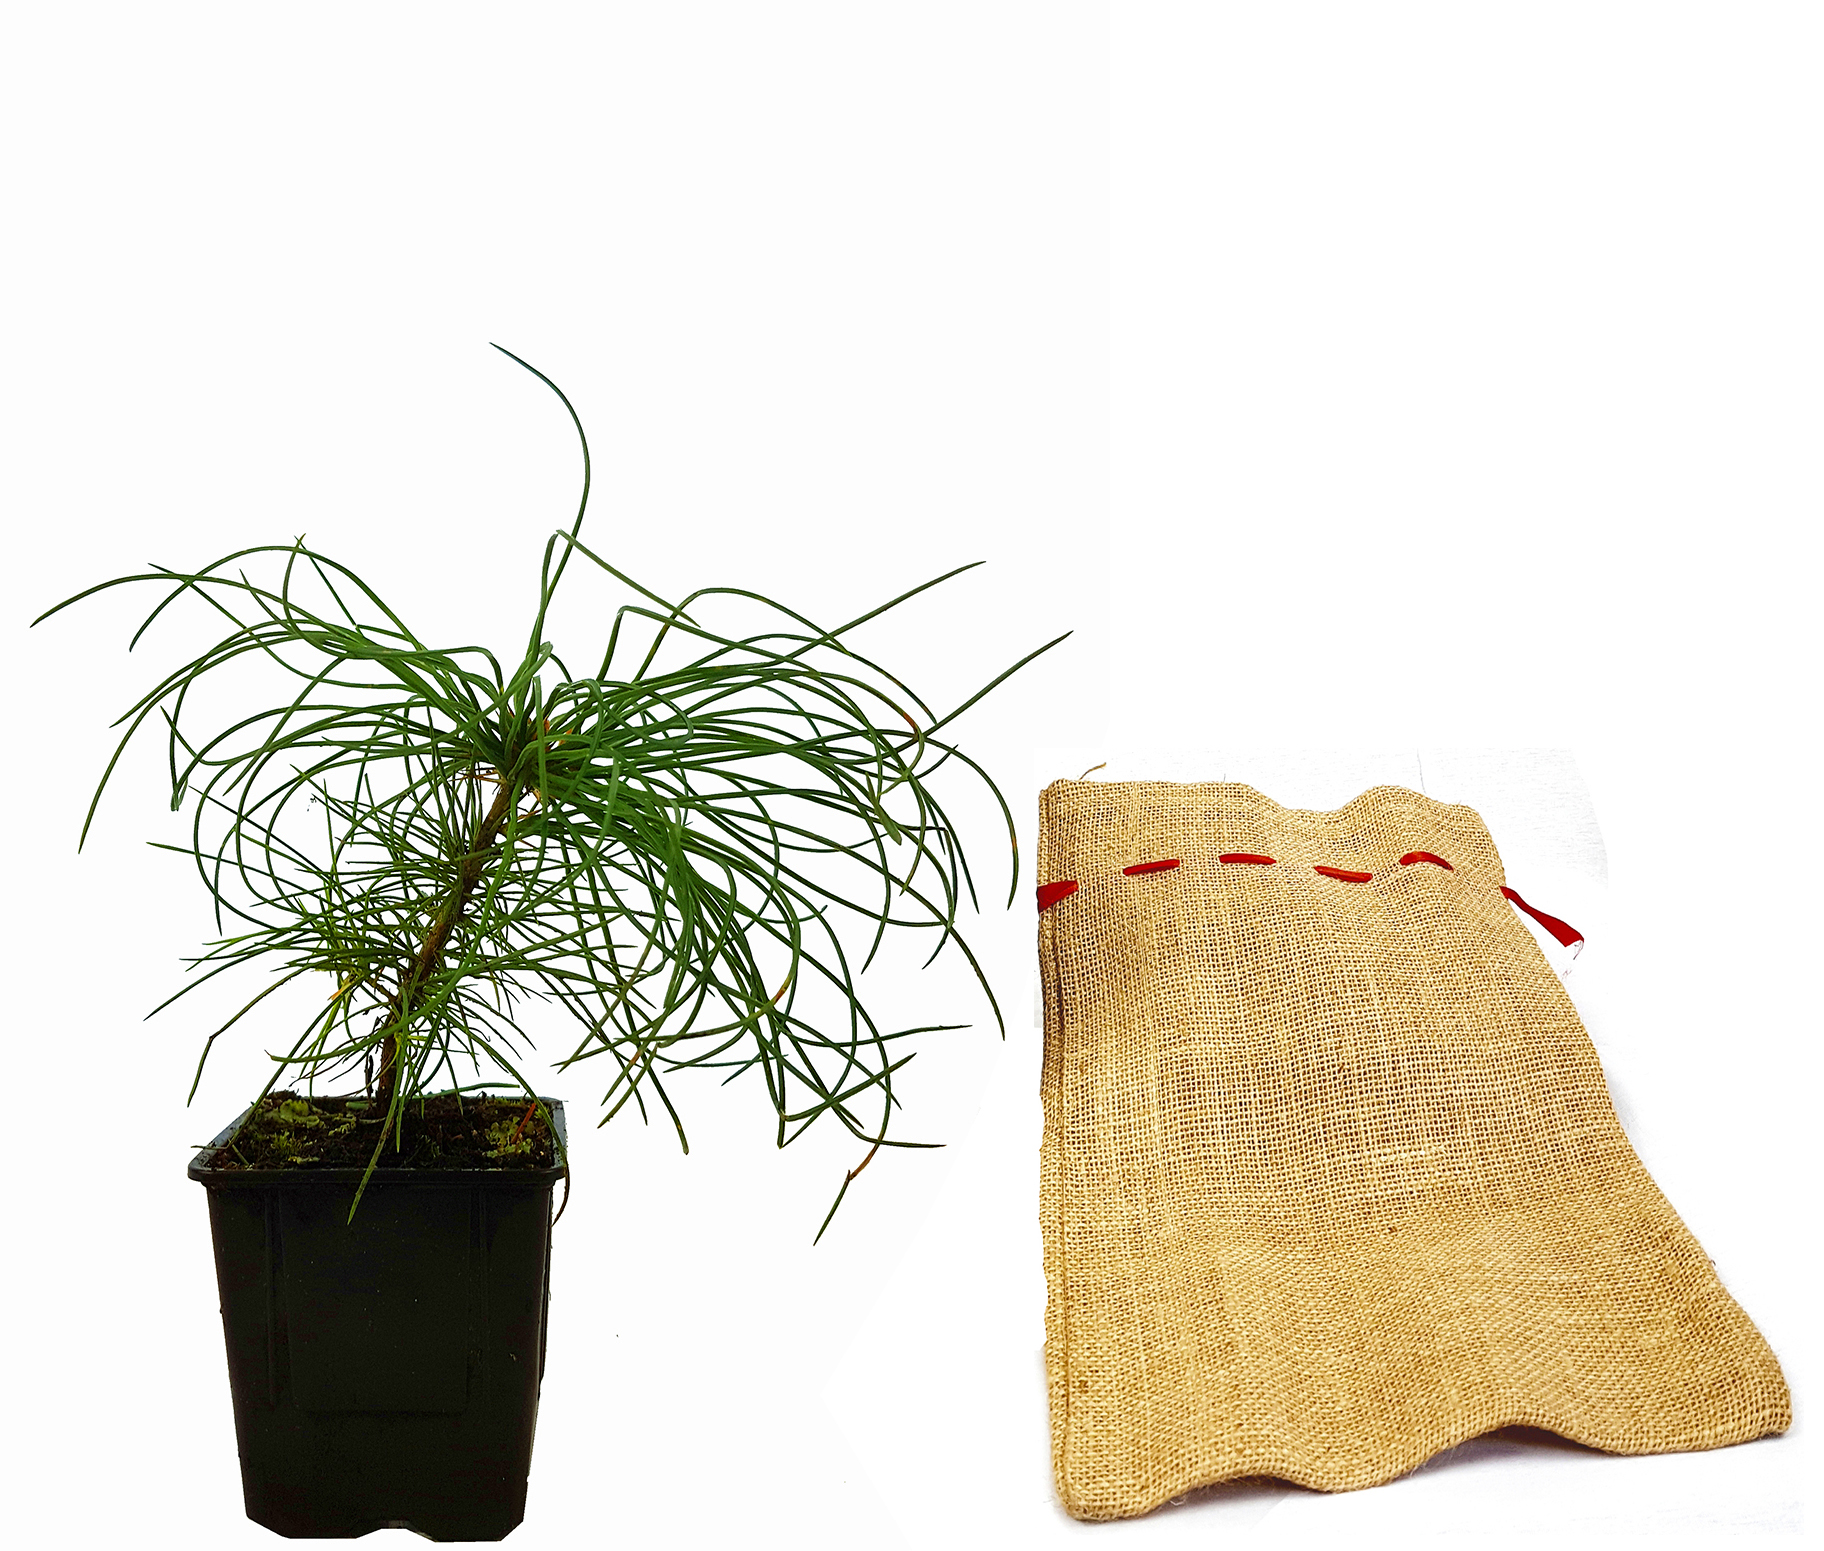 Seedeo® Armands / Davids-Kiefer (Pinus armandii) Pflanze 2 Jahre Geschenkedition Topf mit Sterne